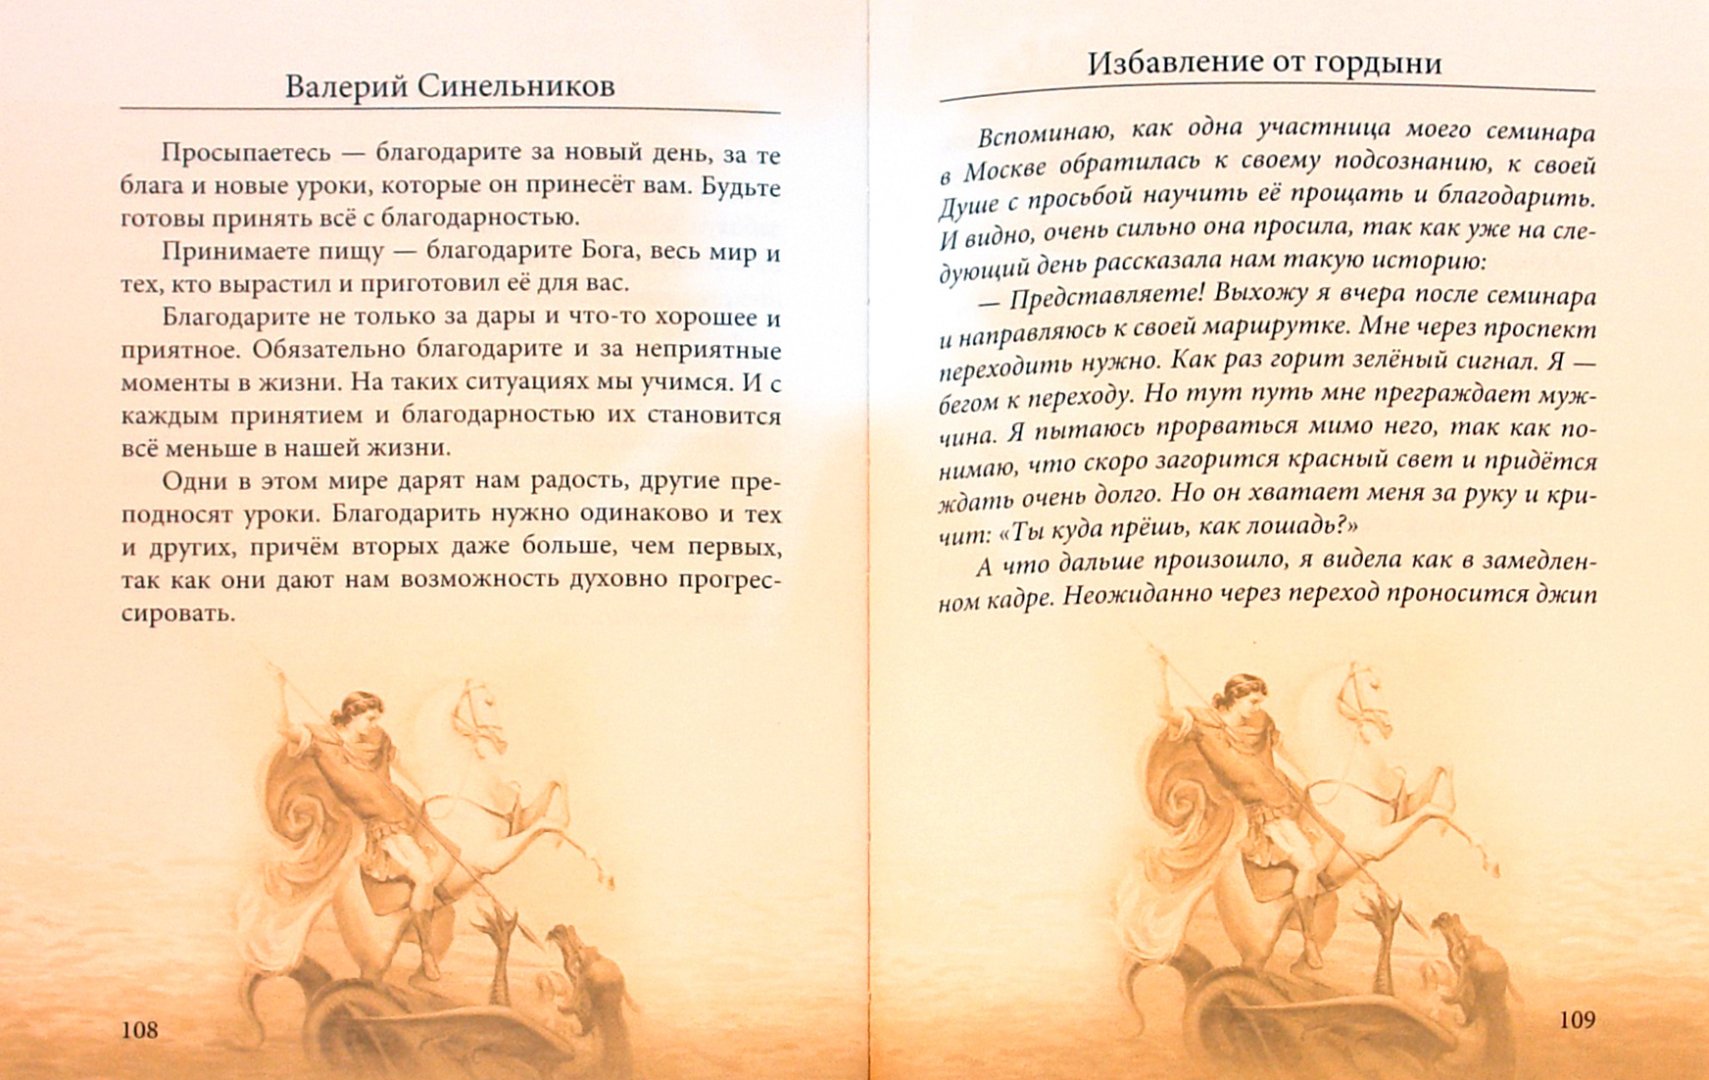 Иллюстрация 1 из 2 для Избавление от гордыни (+ CD) - Валерий Синельников | Лабиринт - книги. Источник: Лабиринт